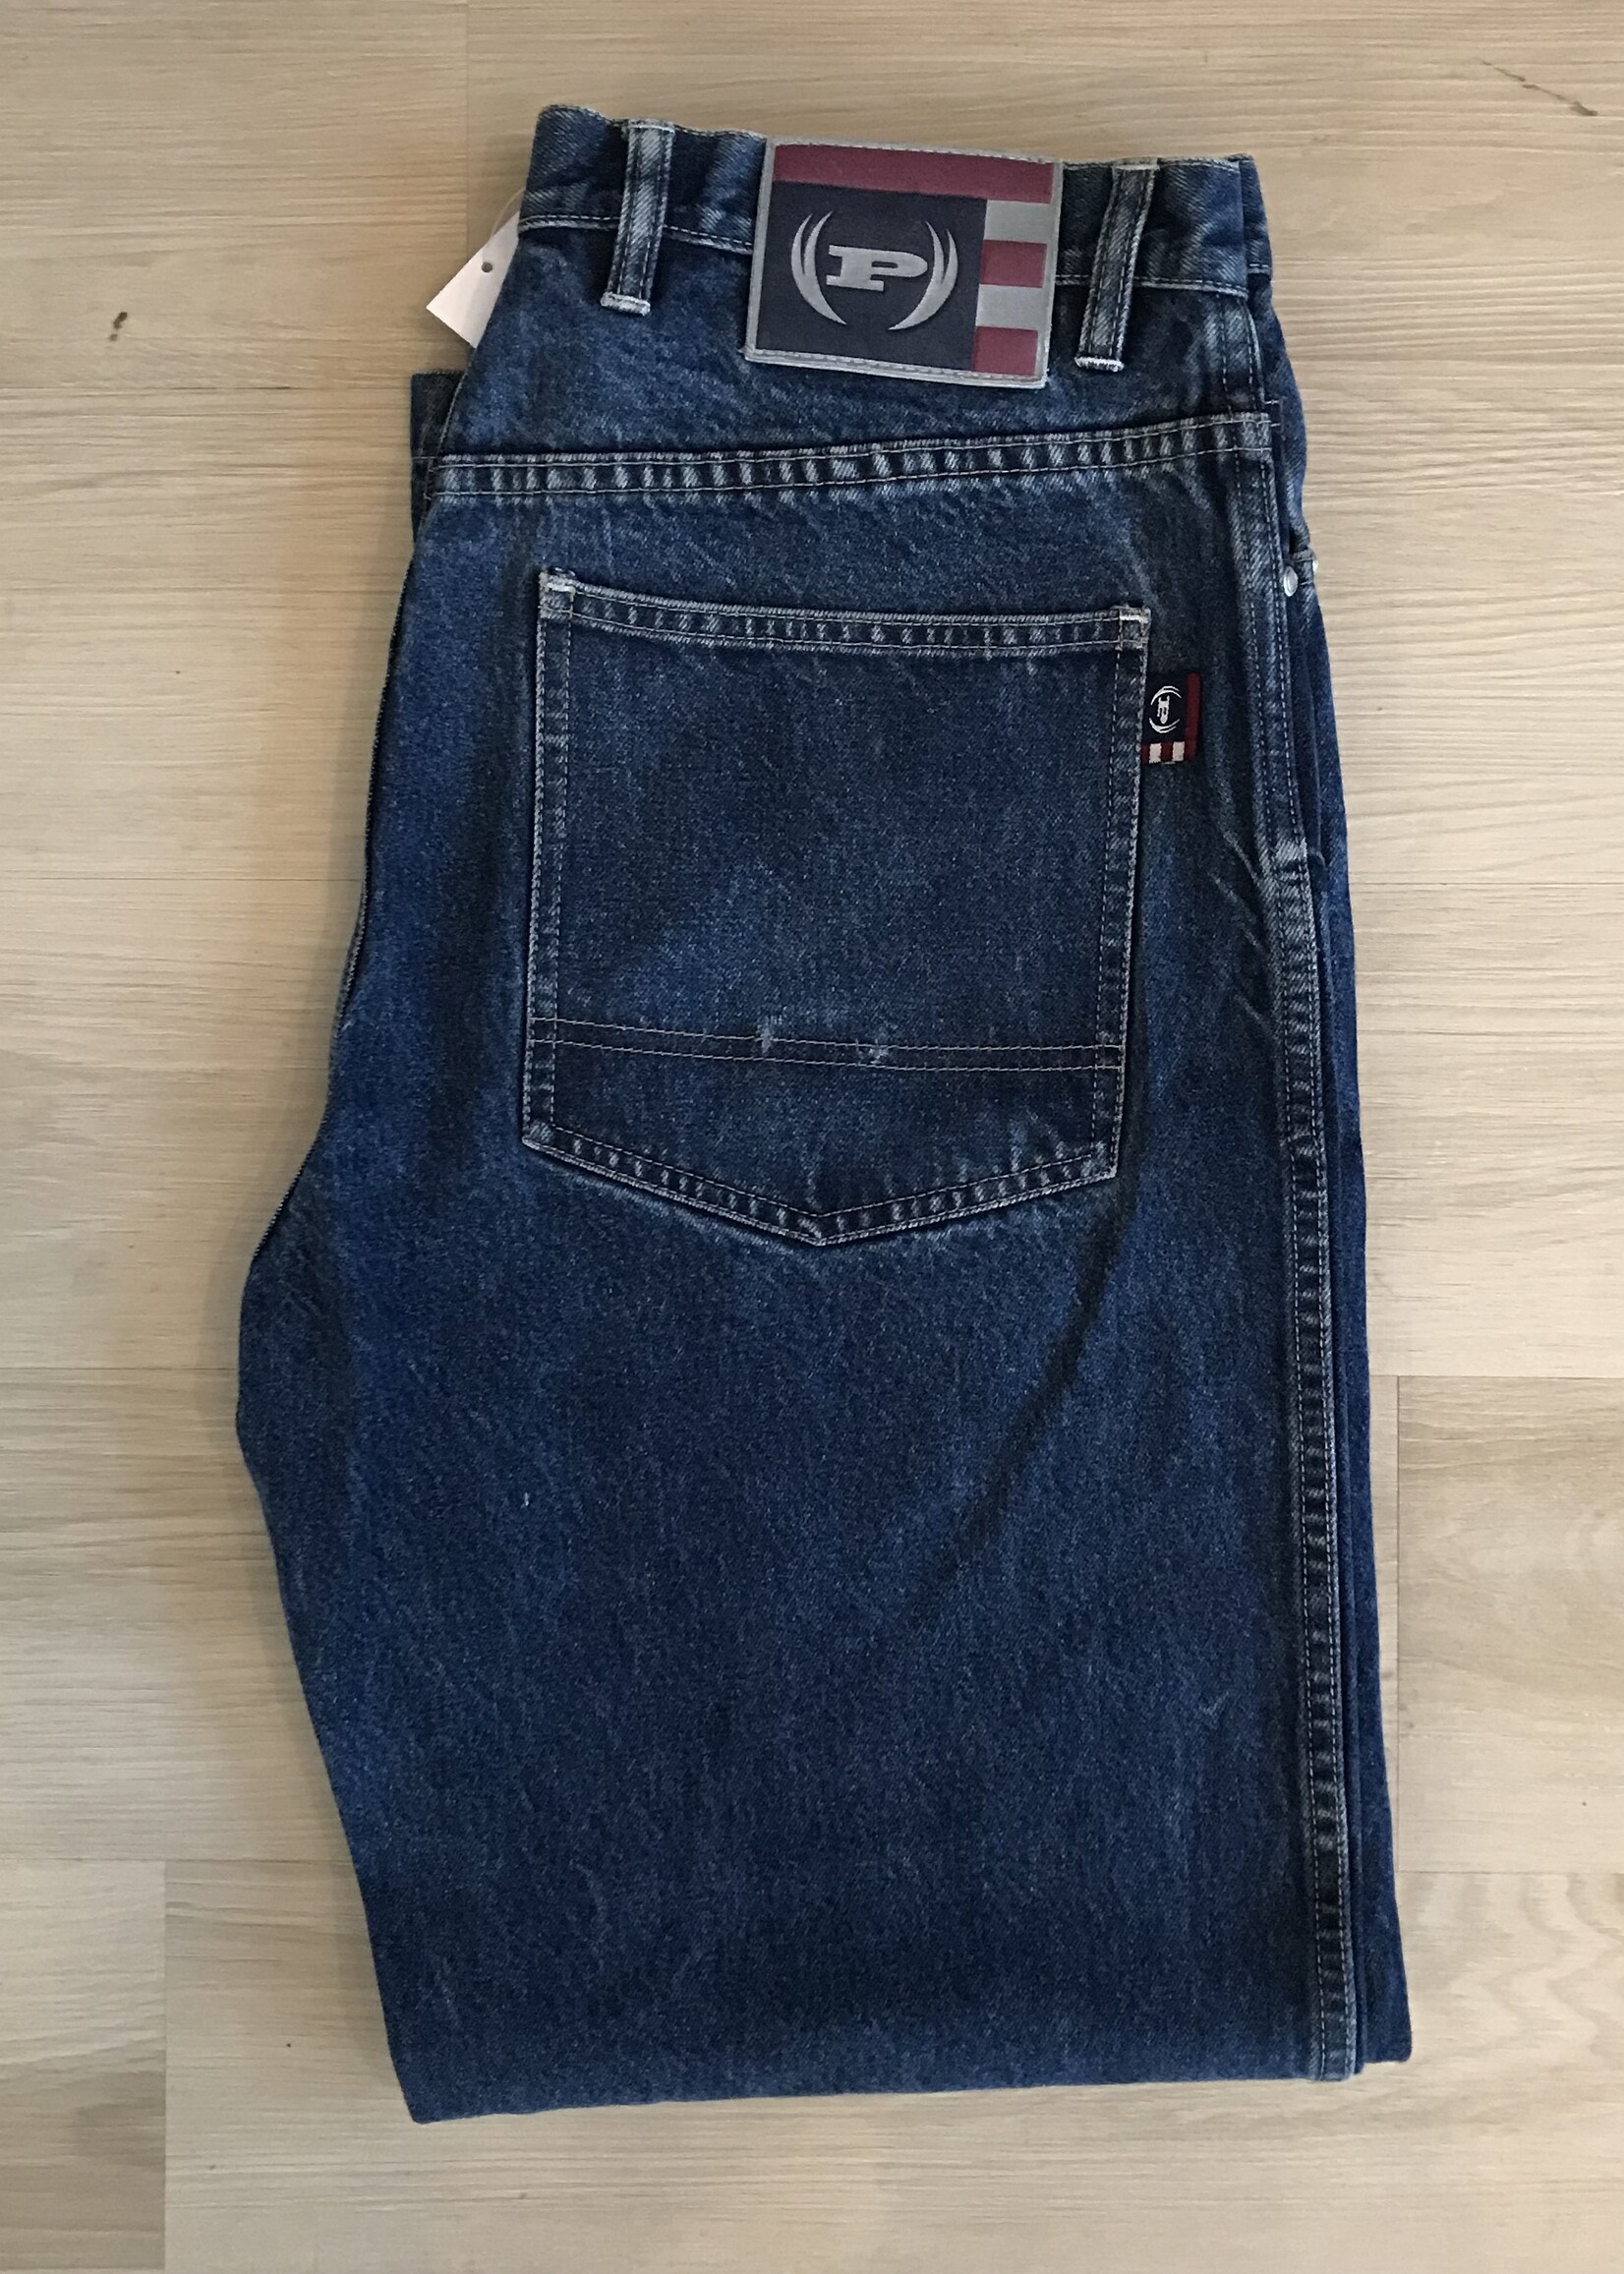 11472	phat farm jeans 32 x 33